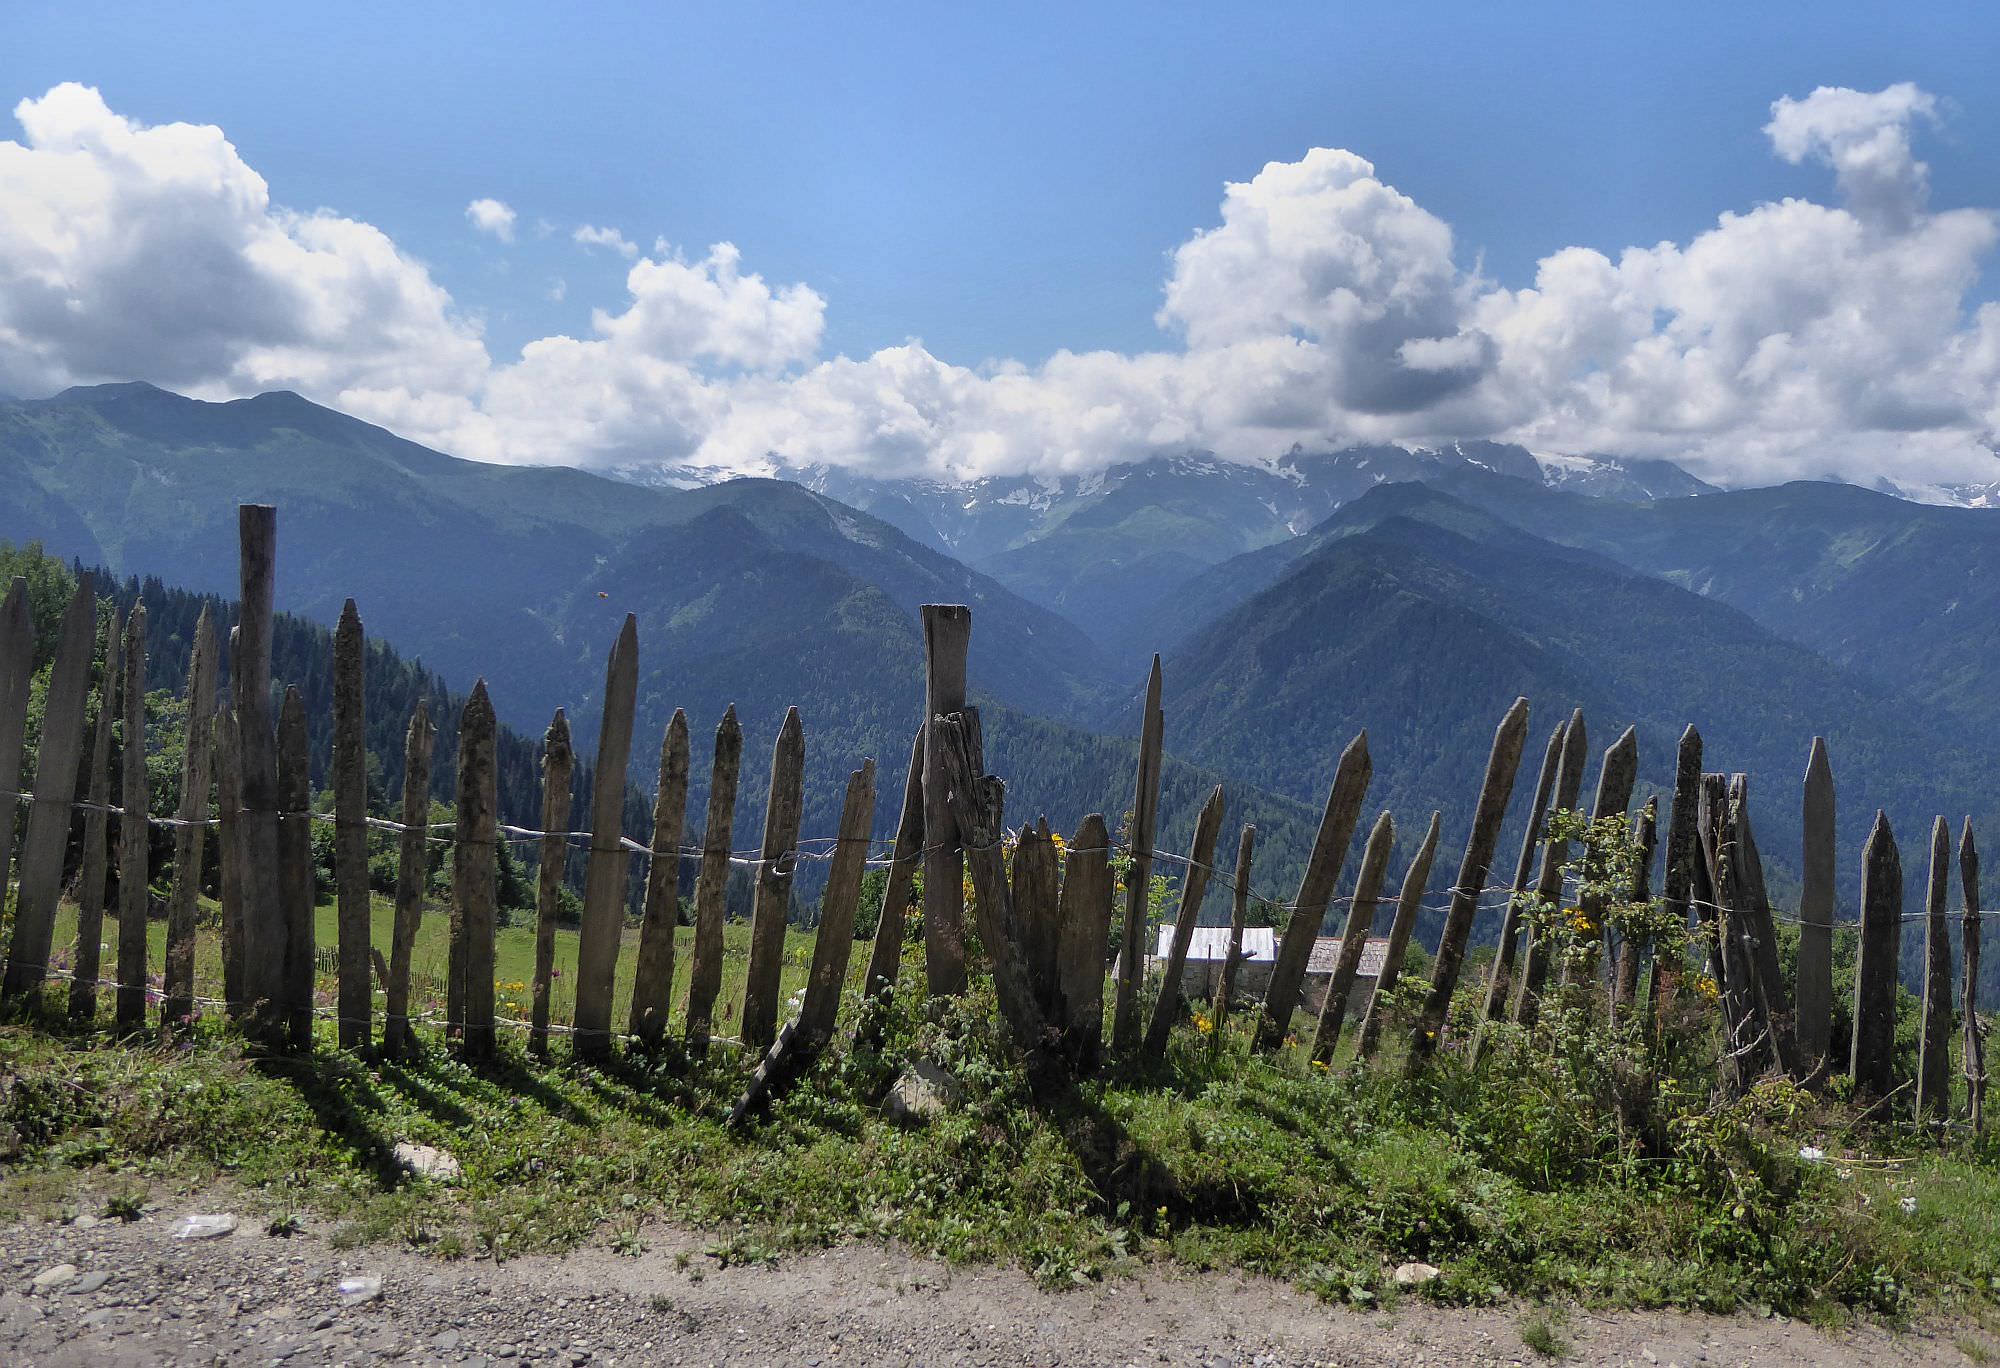 Views from Heshkili village, Svaneti